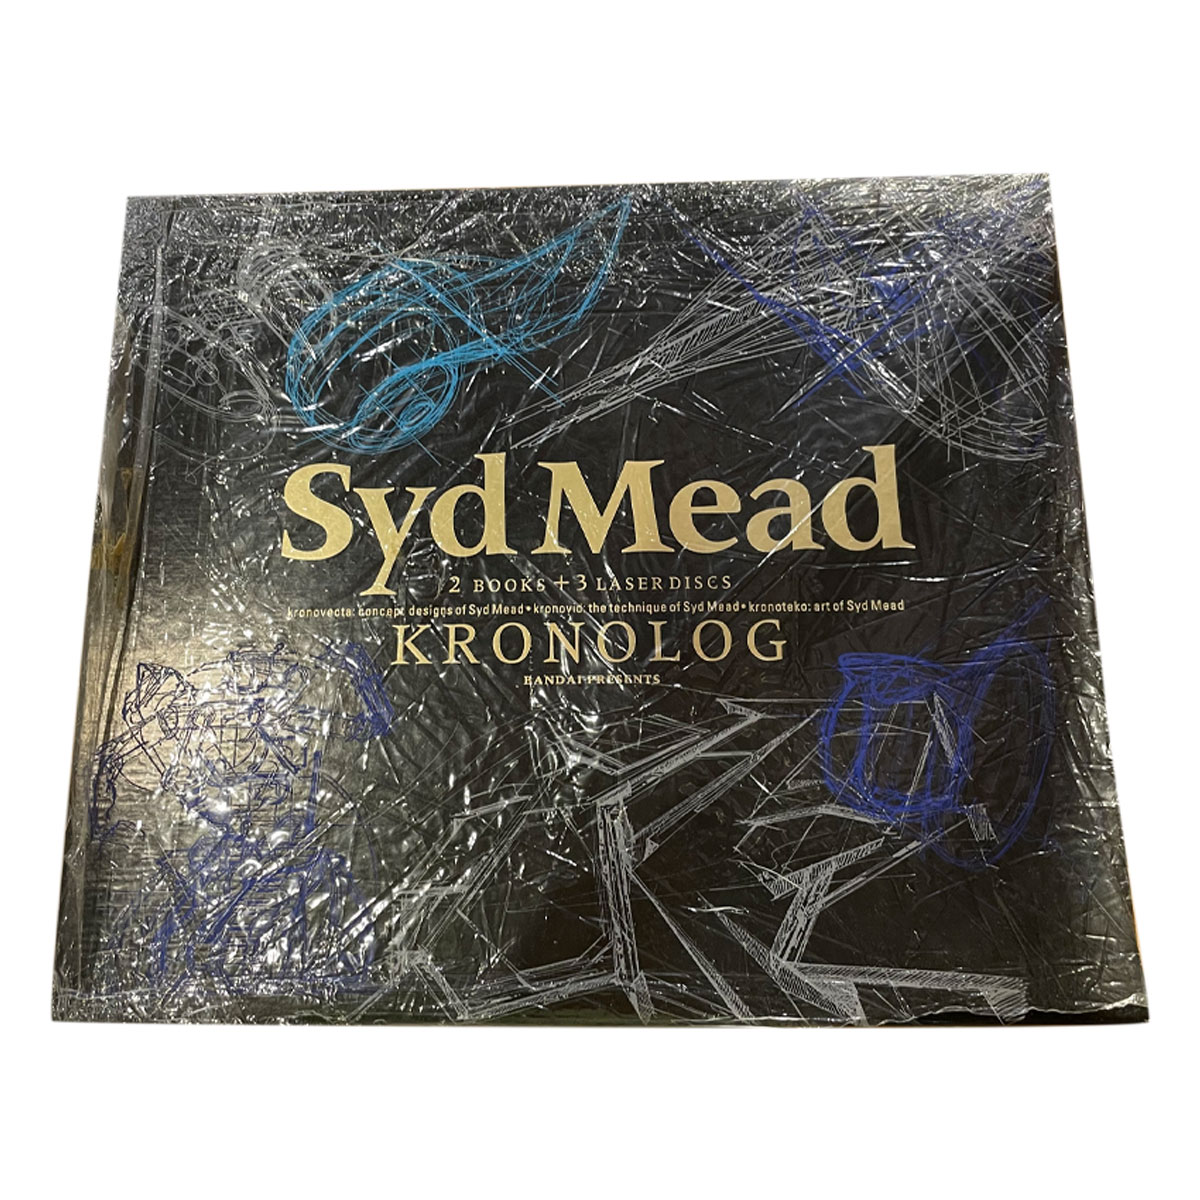 クロノログ シド・ミード KRONOLOG Syd Mead - アート/エンタメ